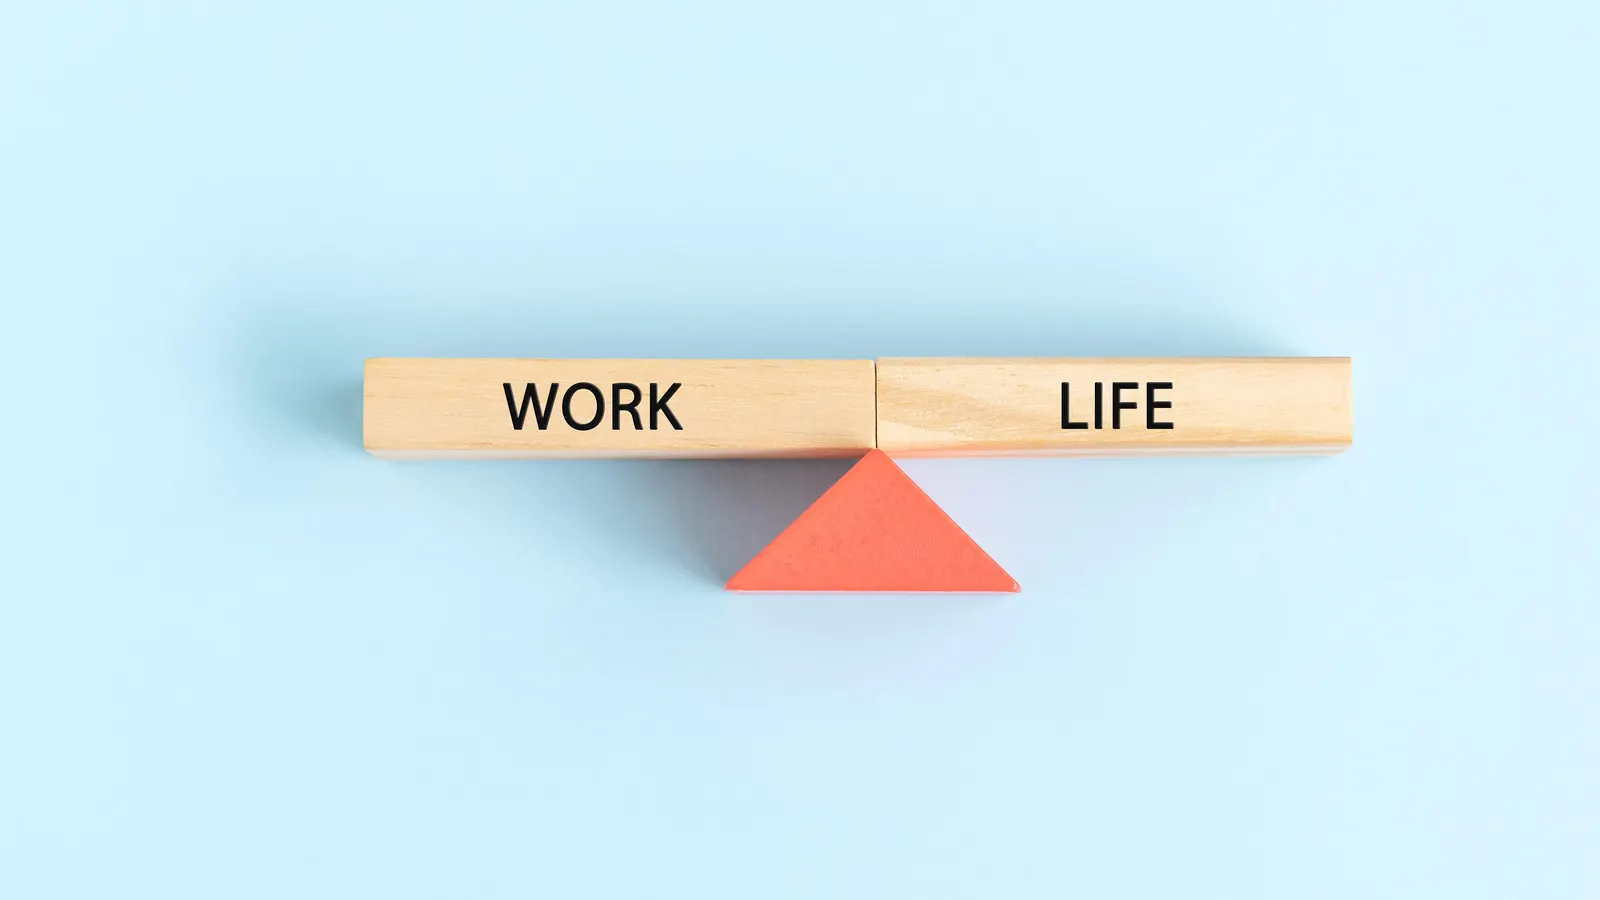 کفۀ کار سنگین‌تر است یا زندگی؟ بررسی تعادل بین کار و زندگی (Work-Life Balance)